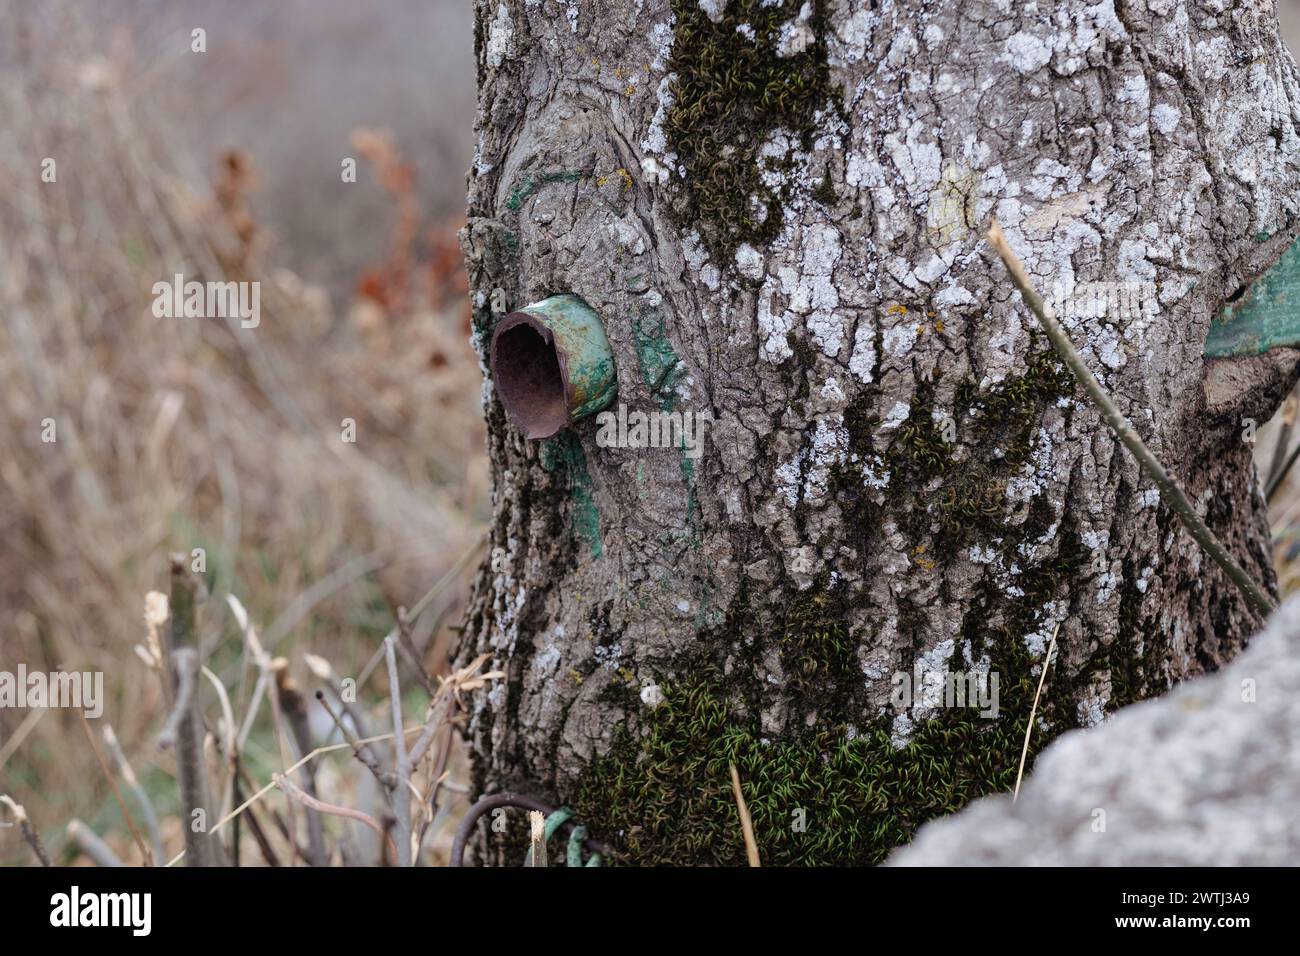 Una pipa de hierro rústica sobresale de un tronco de árbol cubierto de musgo, mezclando la industria con la naturaleza. La escena refleja una tranquila convivencia entre los artefactos humanos y el mundo natural. Foto de stock